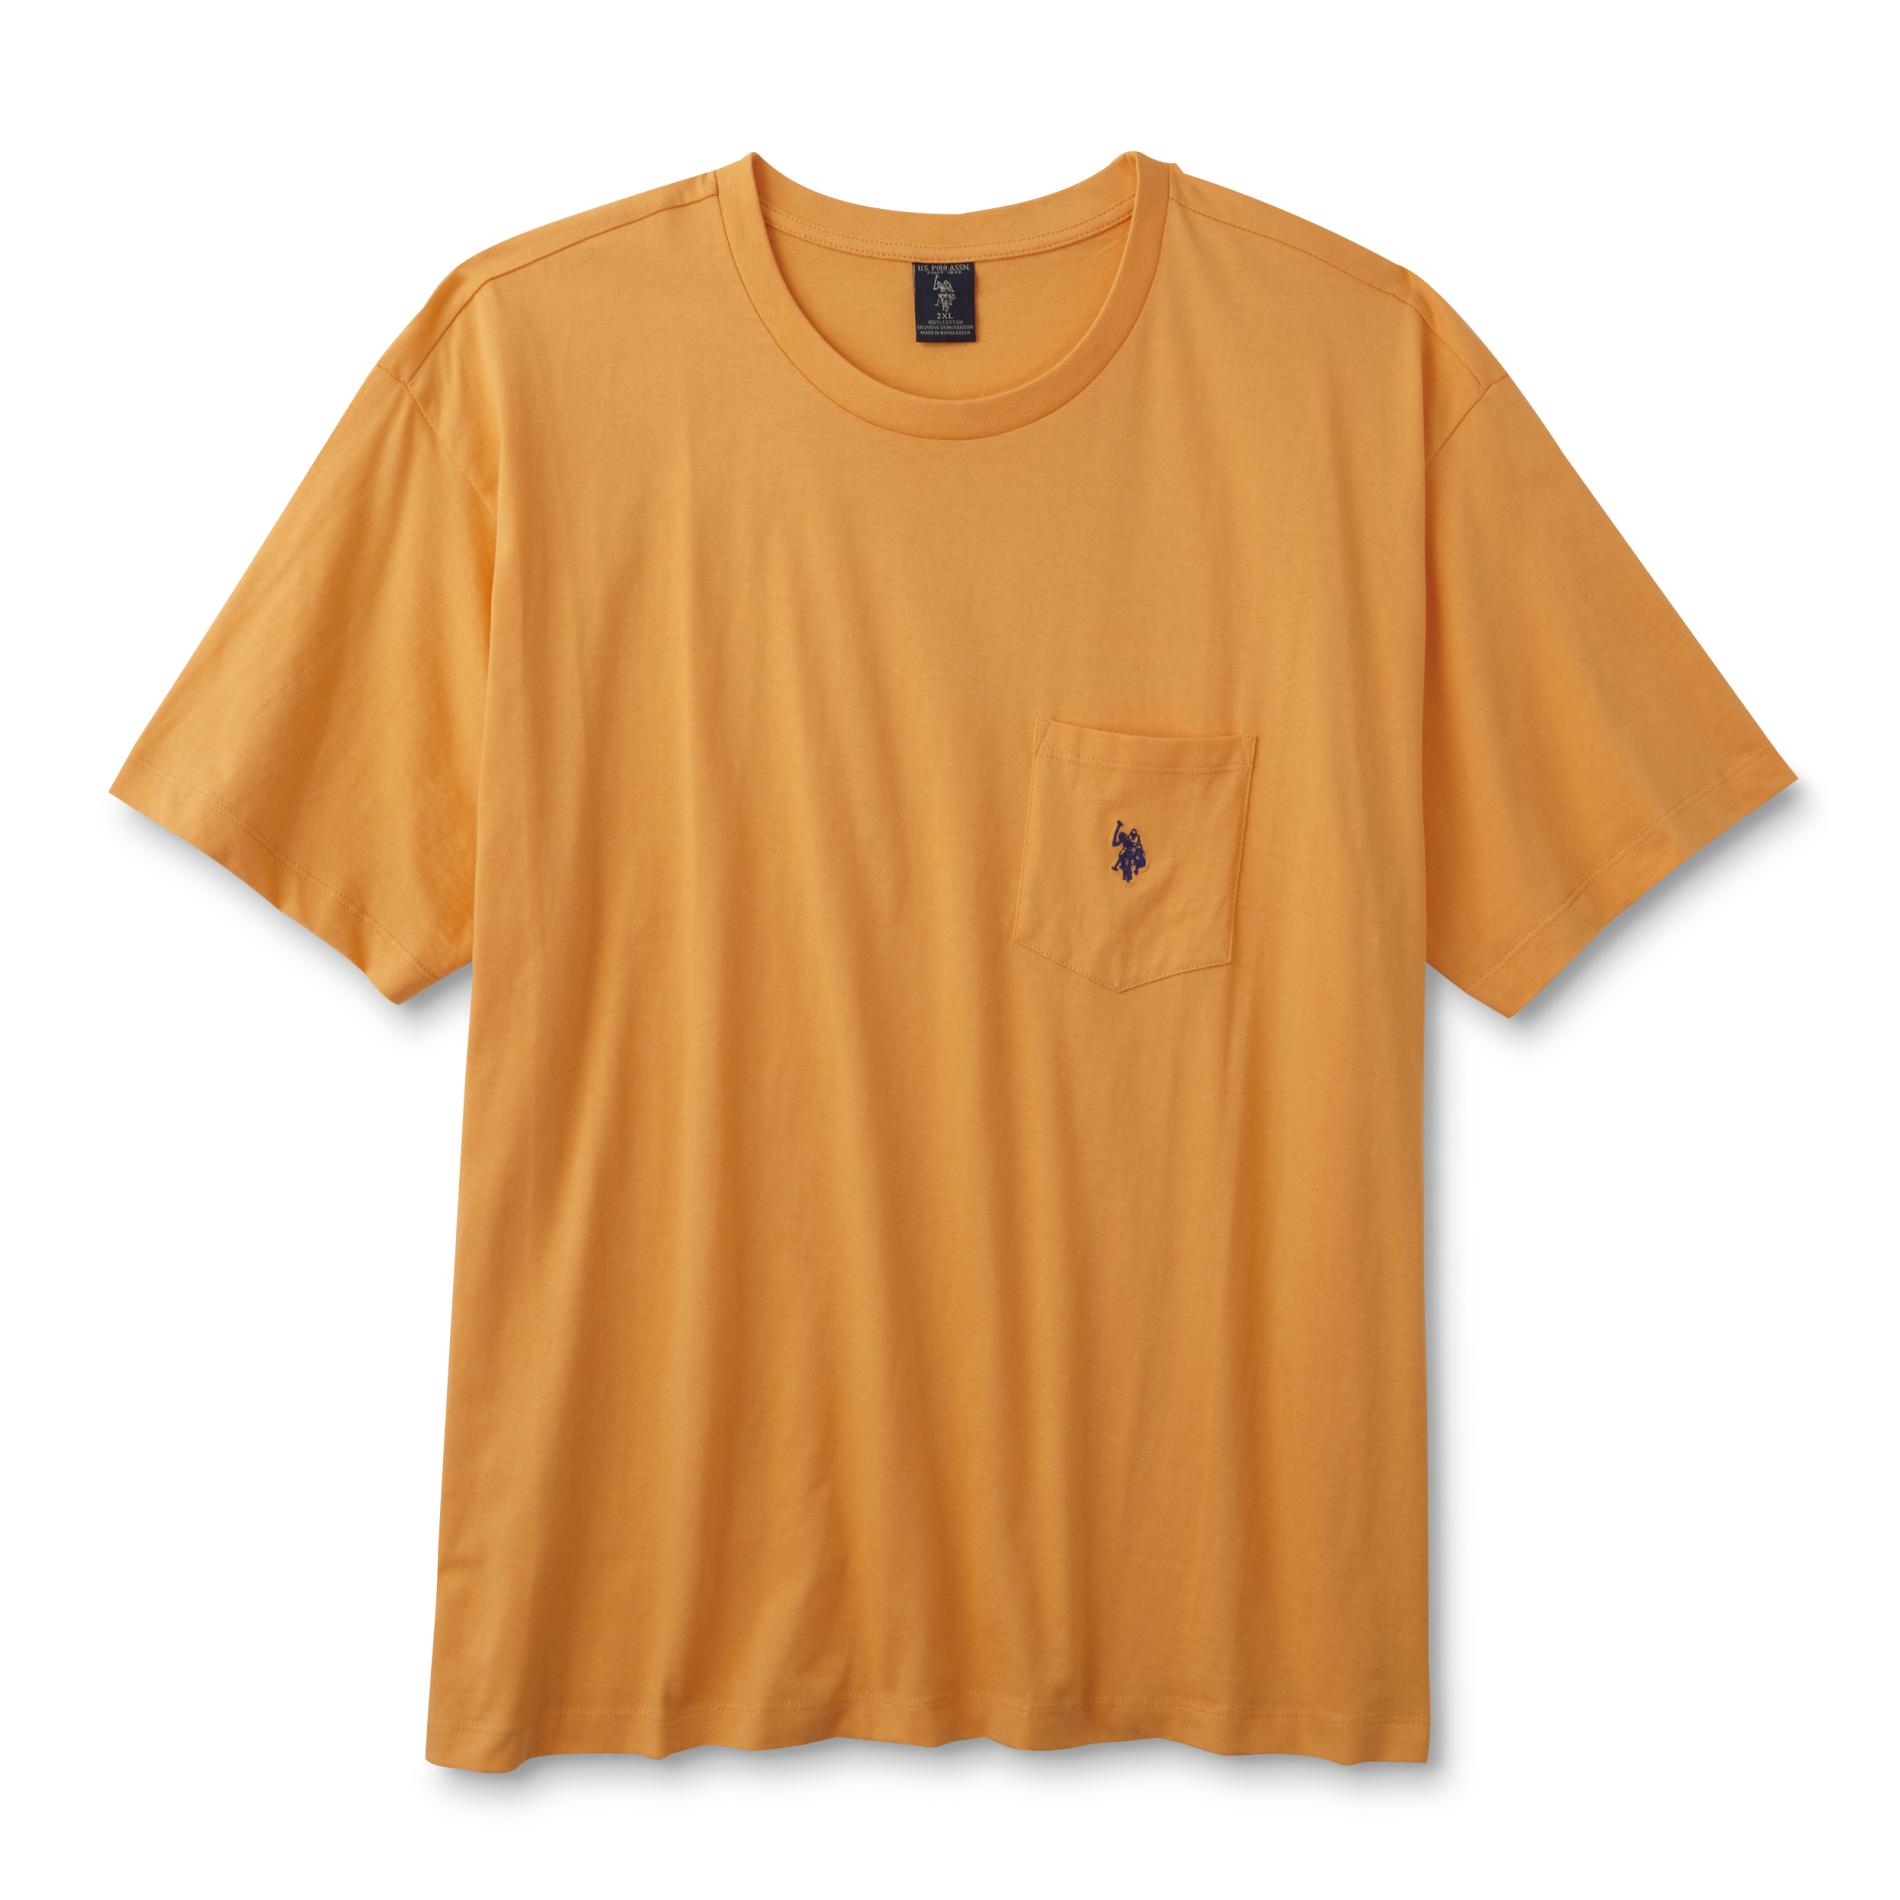 U.S. Polo Assn. Men's Big & Tall Pocket T-Shirt | Shop Your Way: Online ...